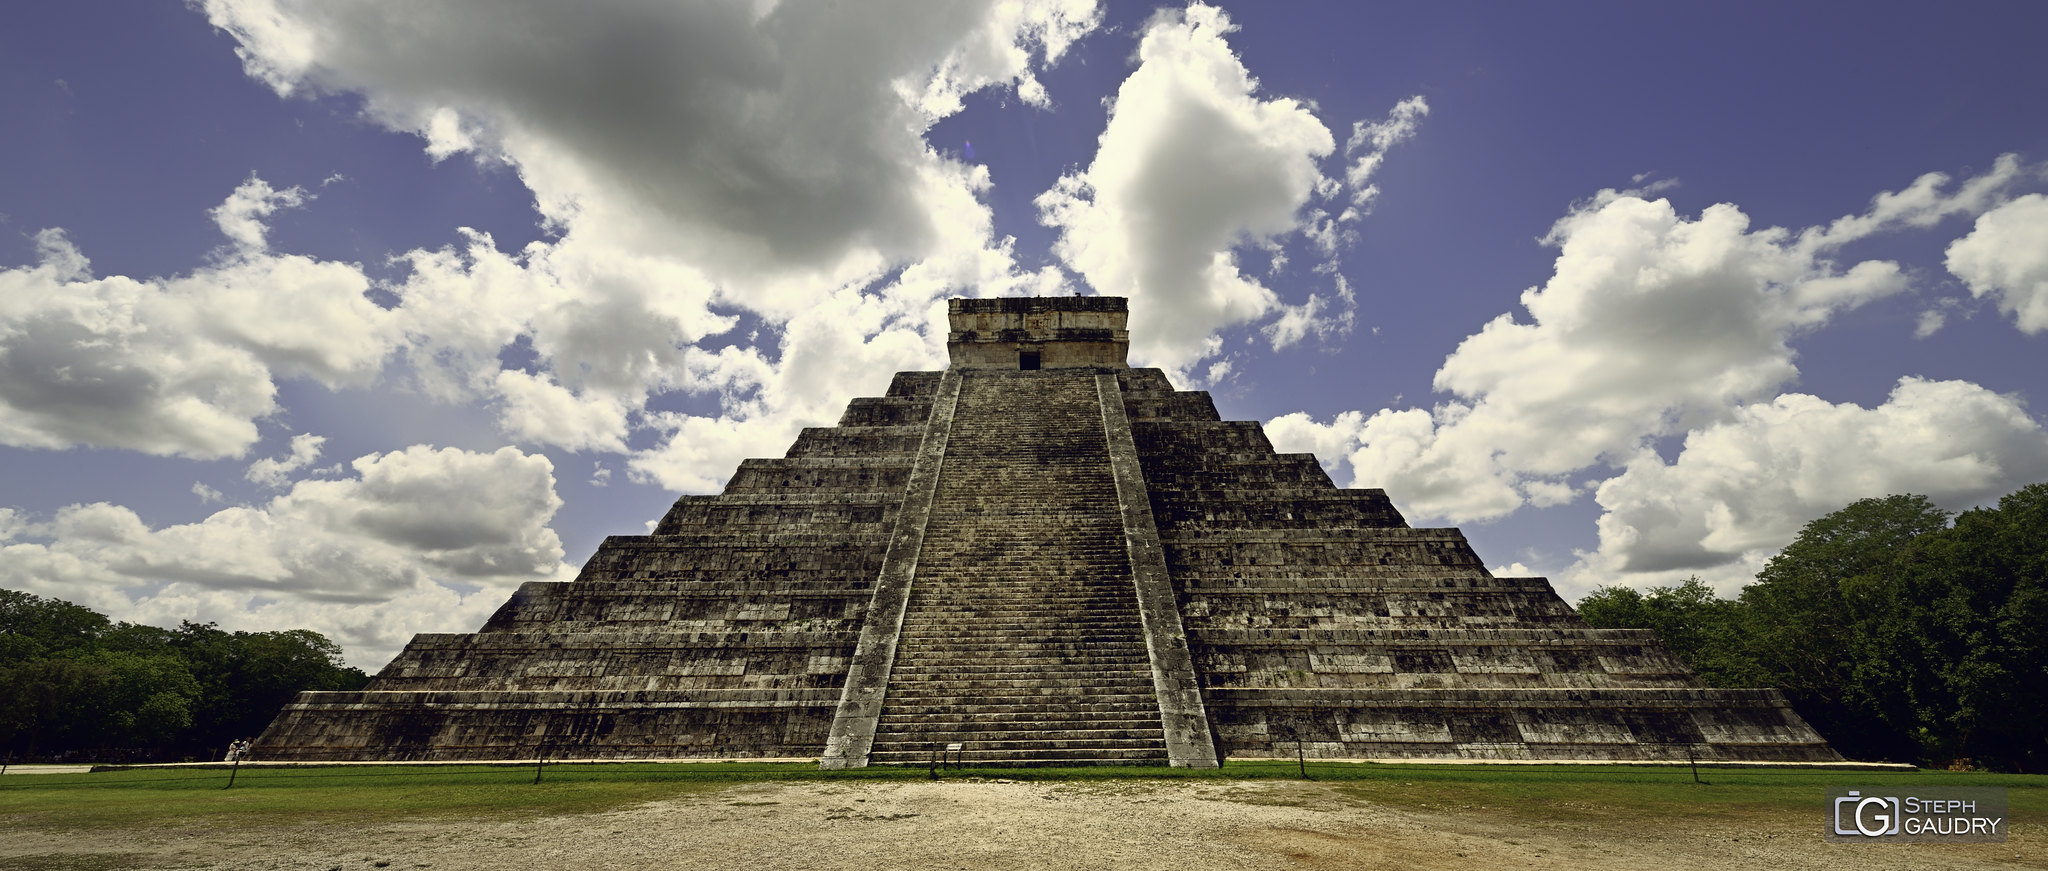 Chichen Itza - El Castillo (pyramide de Kukulcán) [Klicken Sie hier, um die Diashow zu starten]